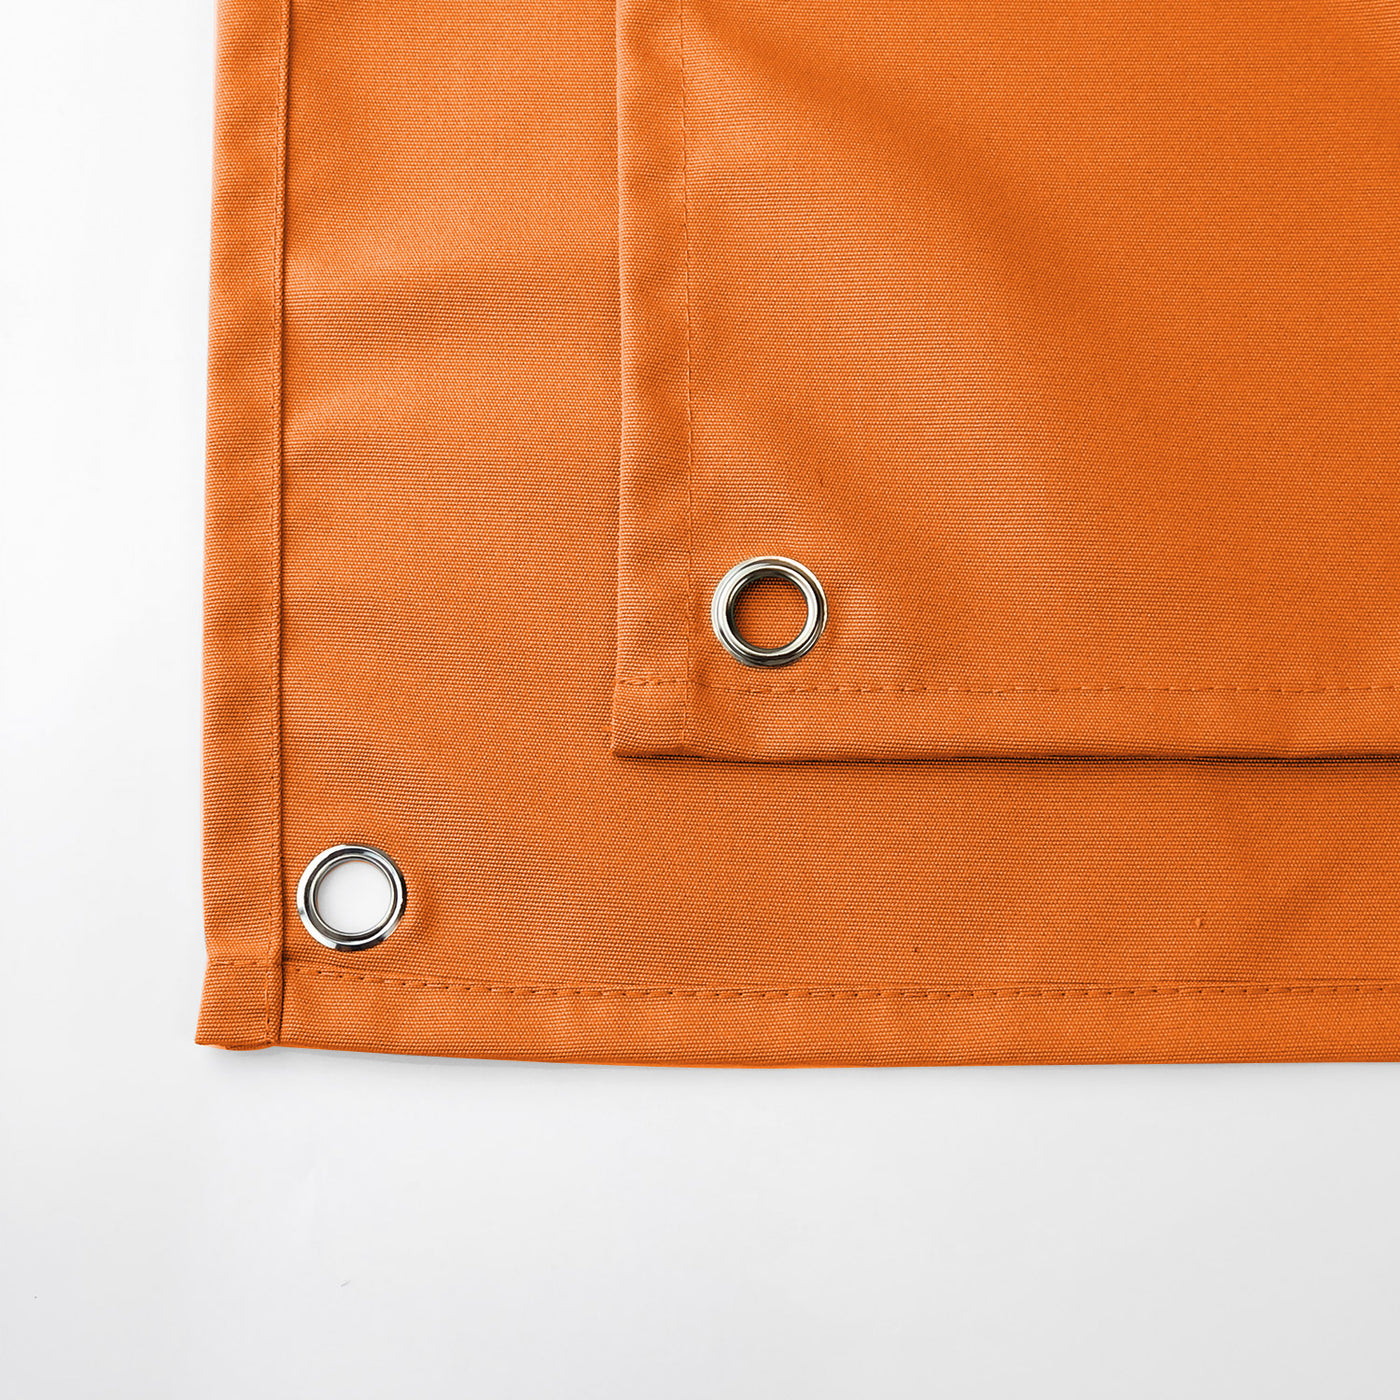 PENGI Outdoor Curtains Waterproof- Pure Red Orange